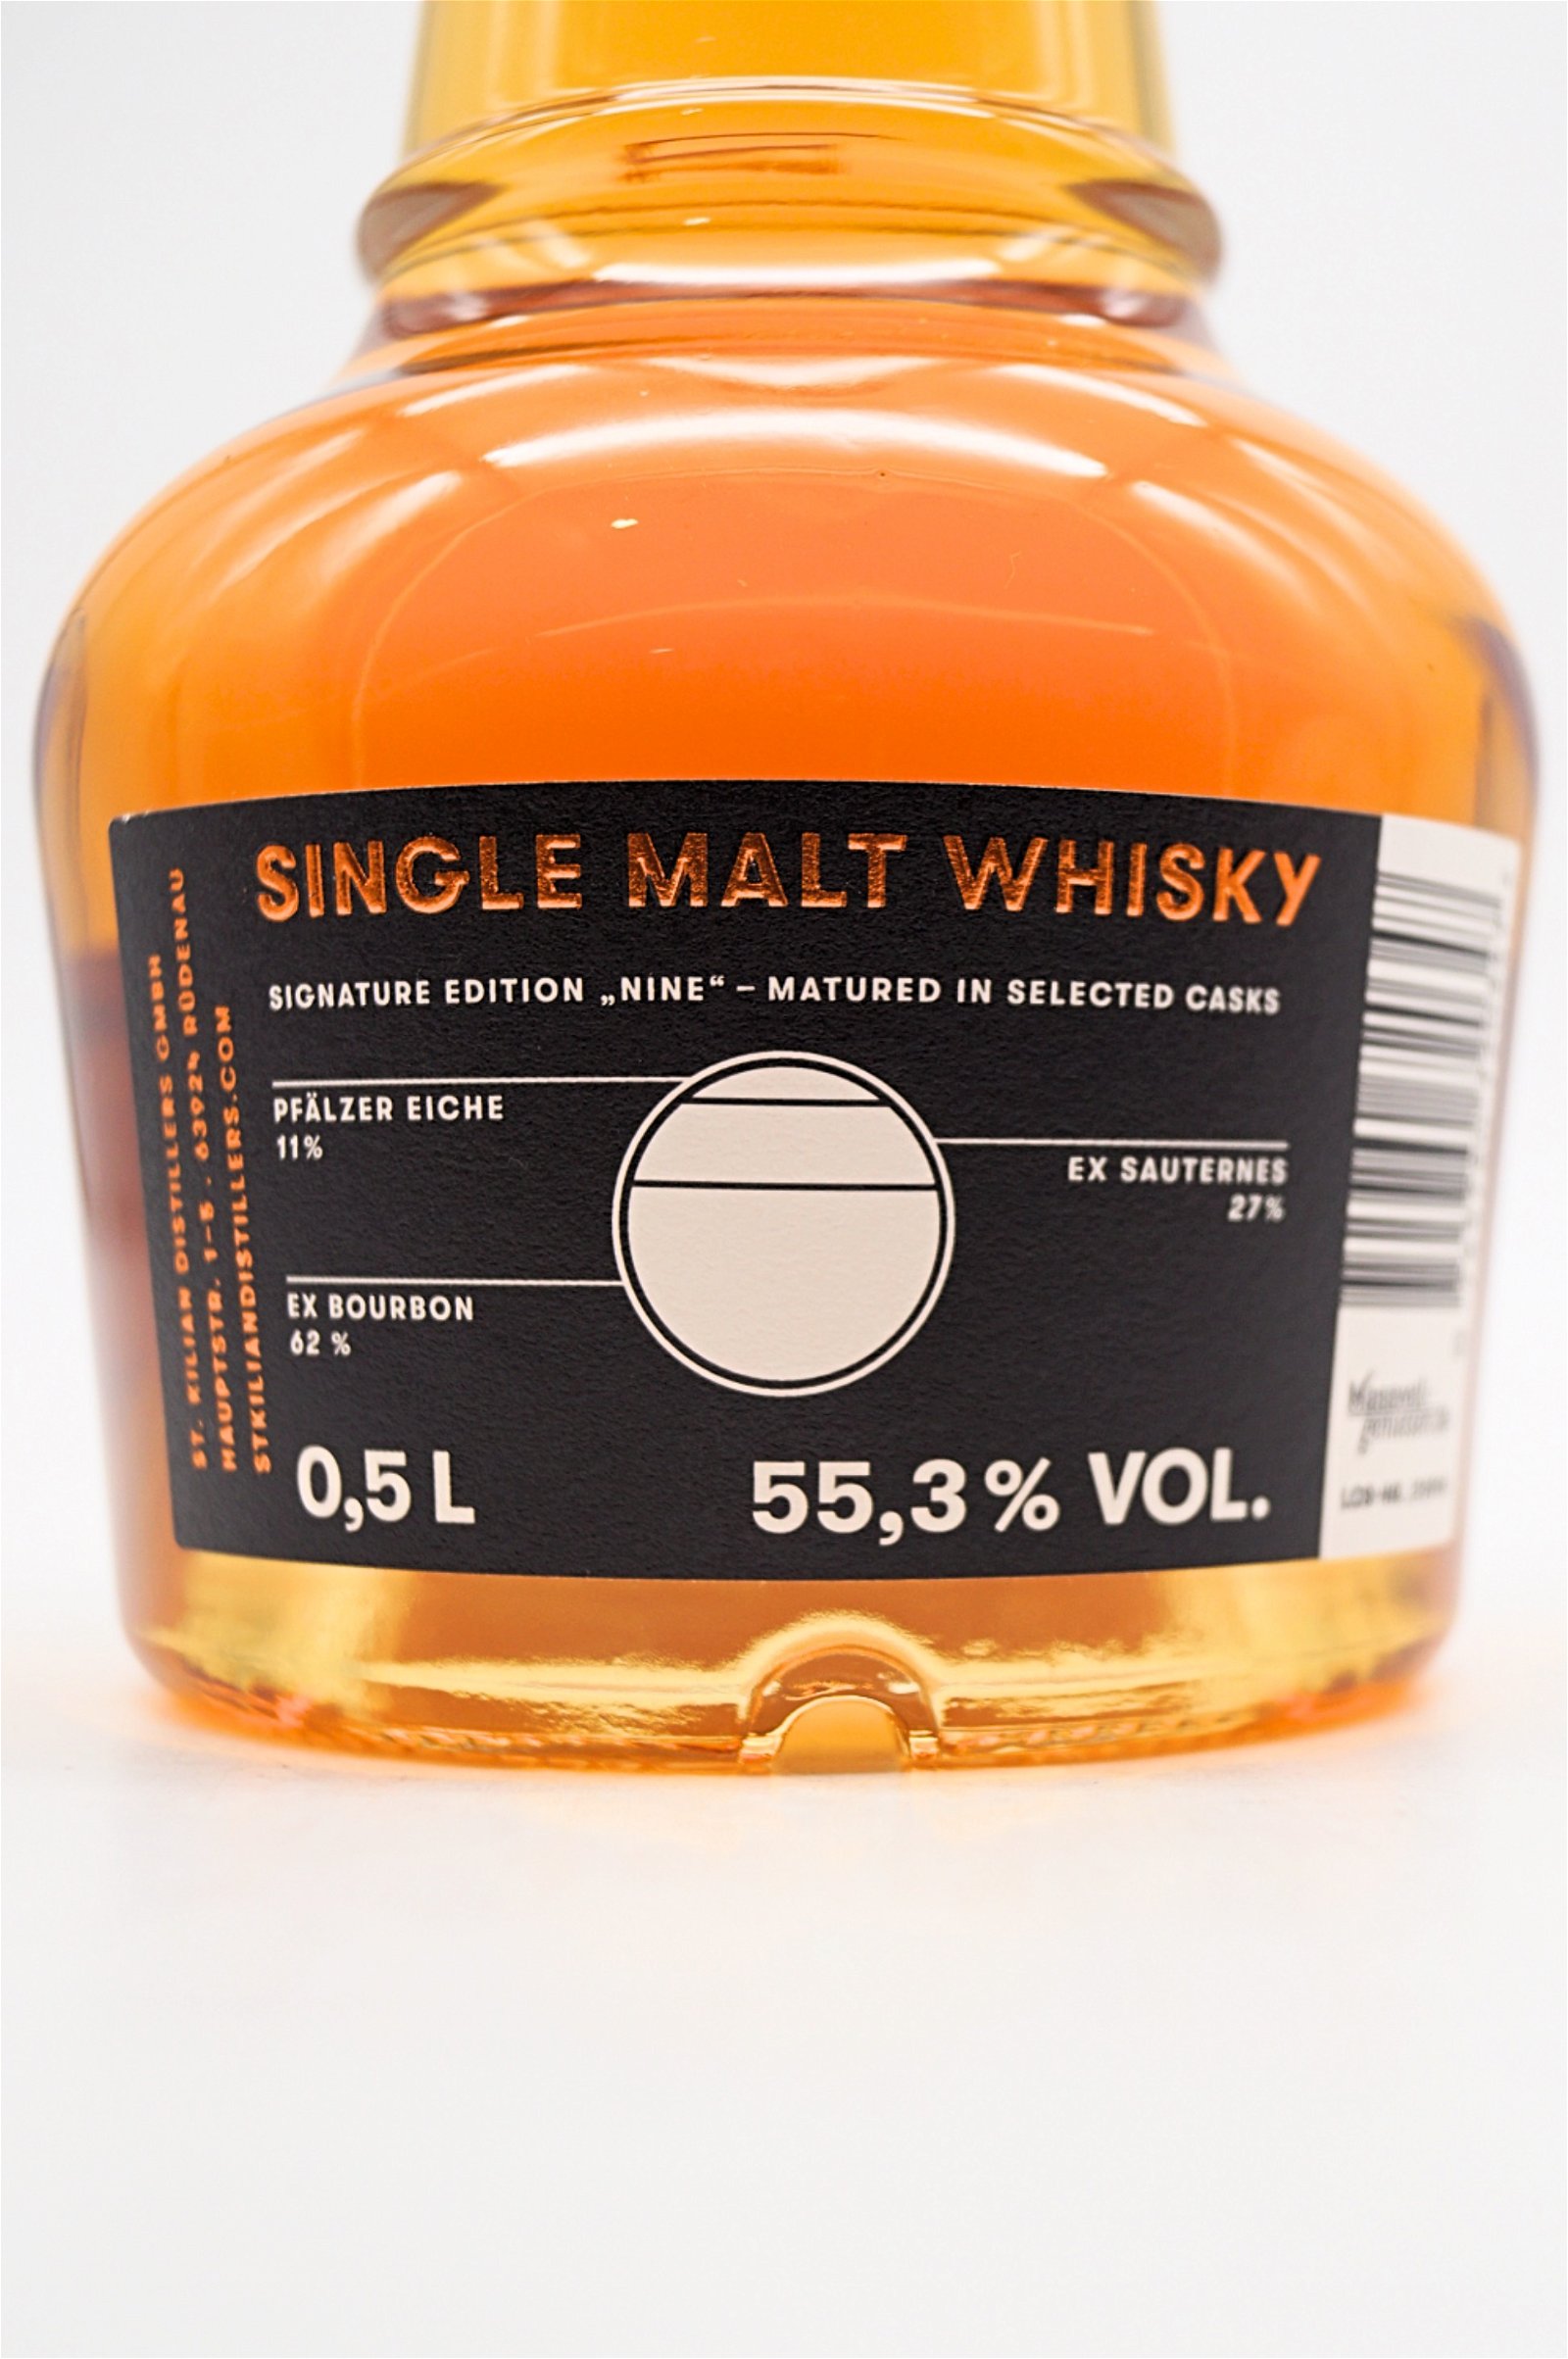 St. Kilian Distillers Signature Edition Nine Single Malt Whisky